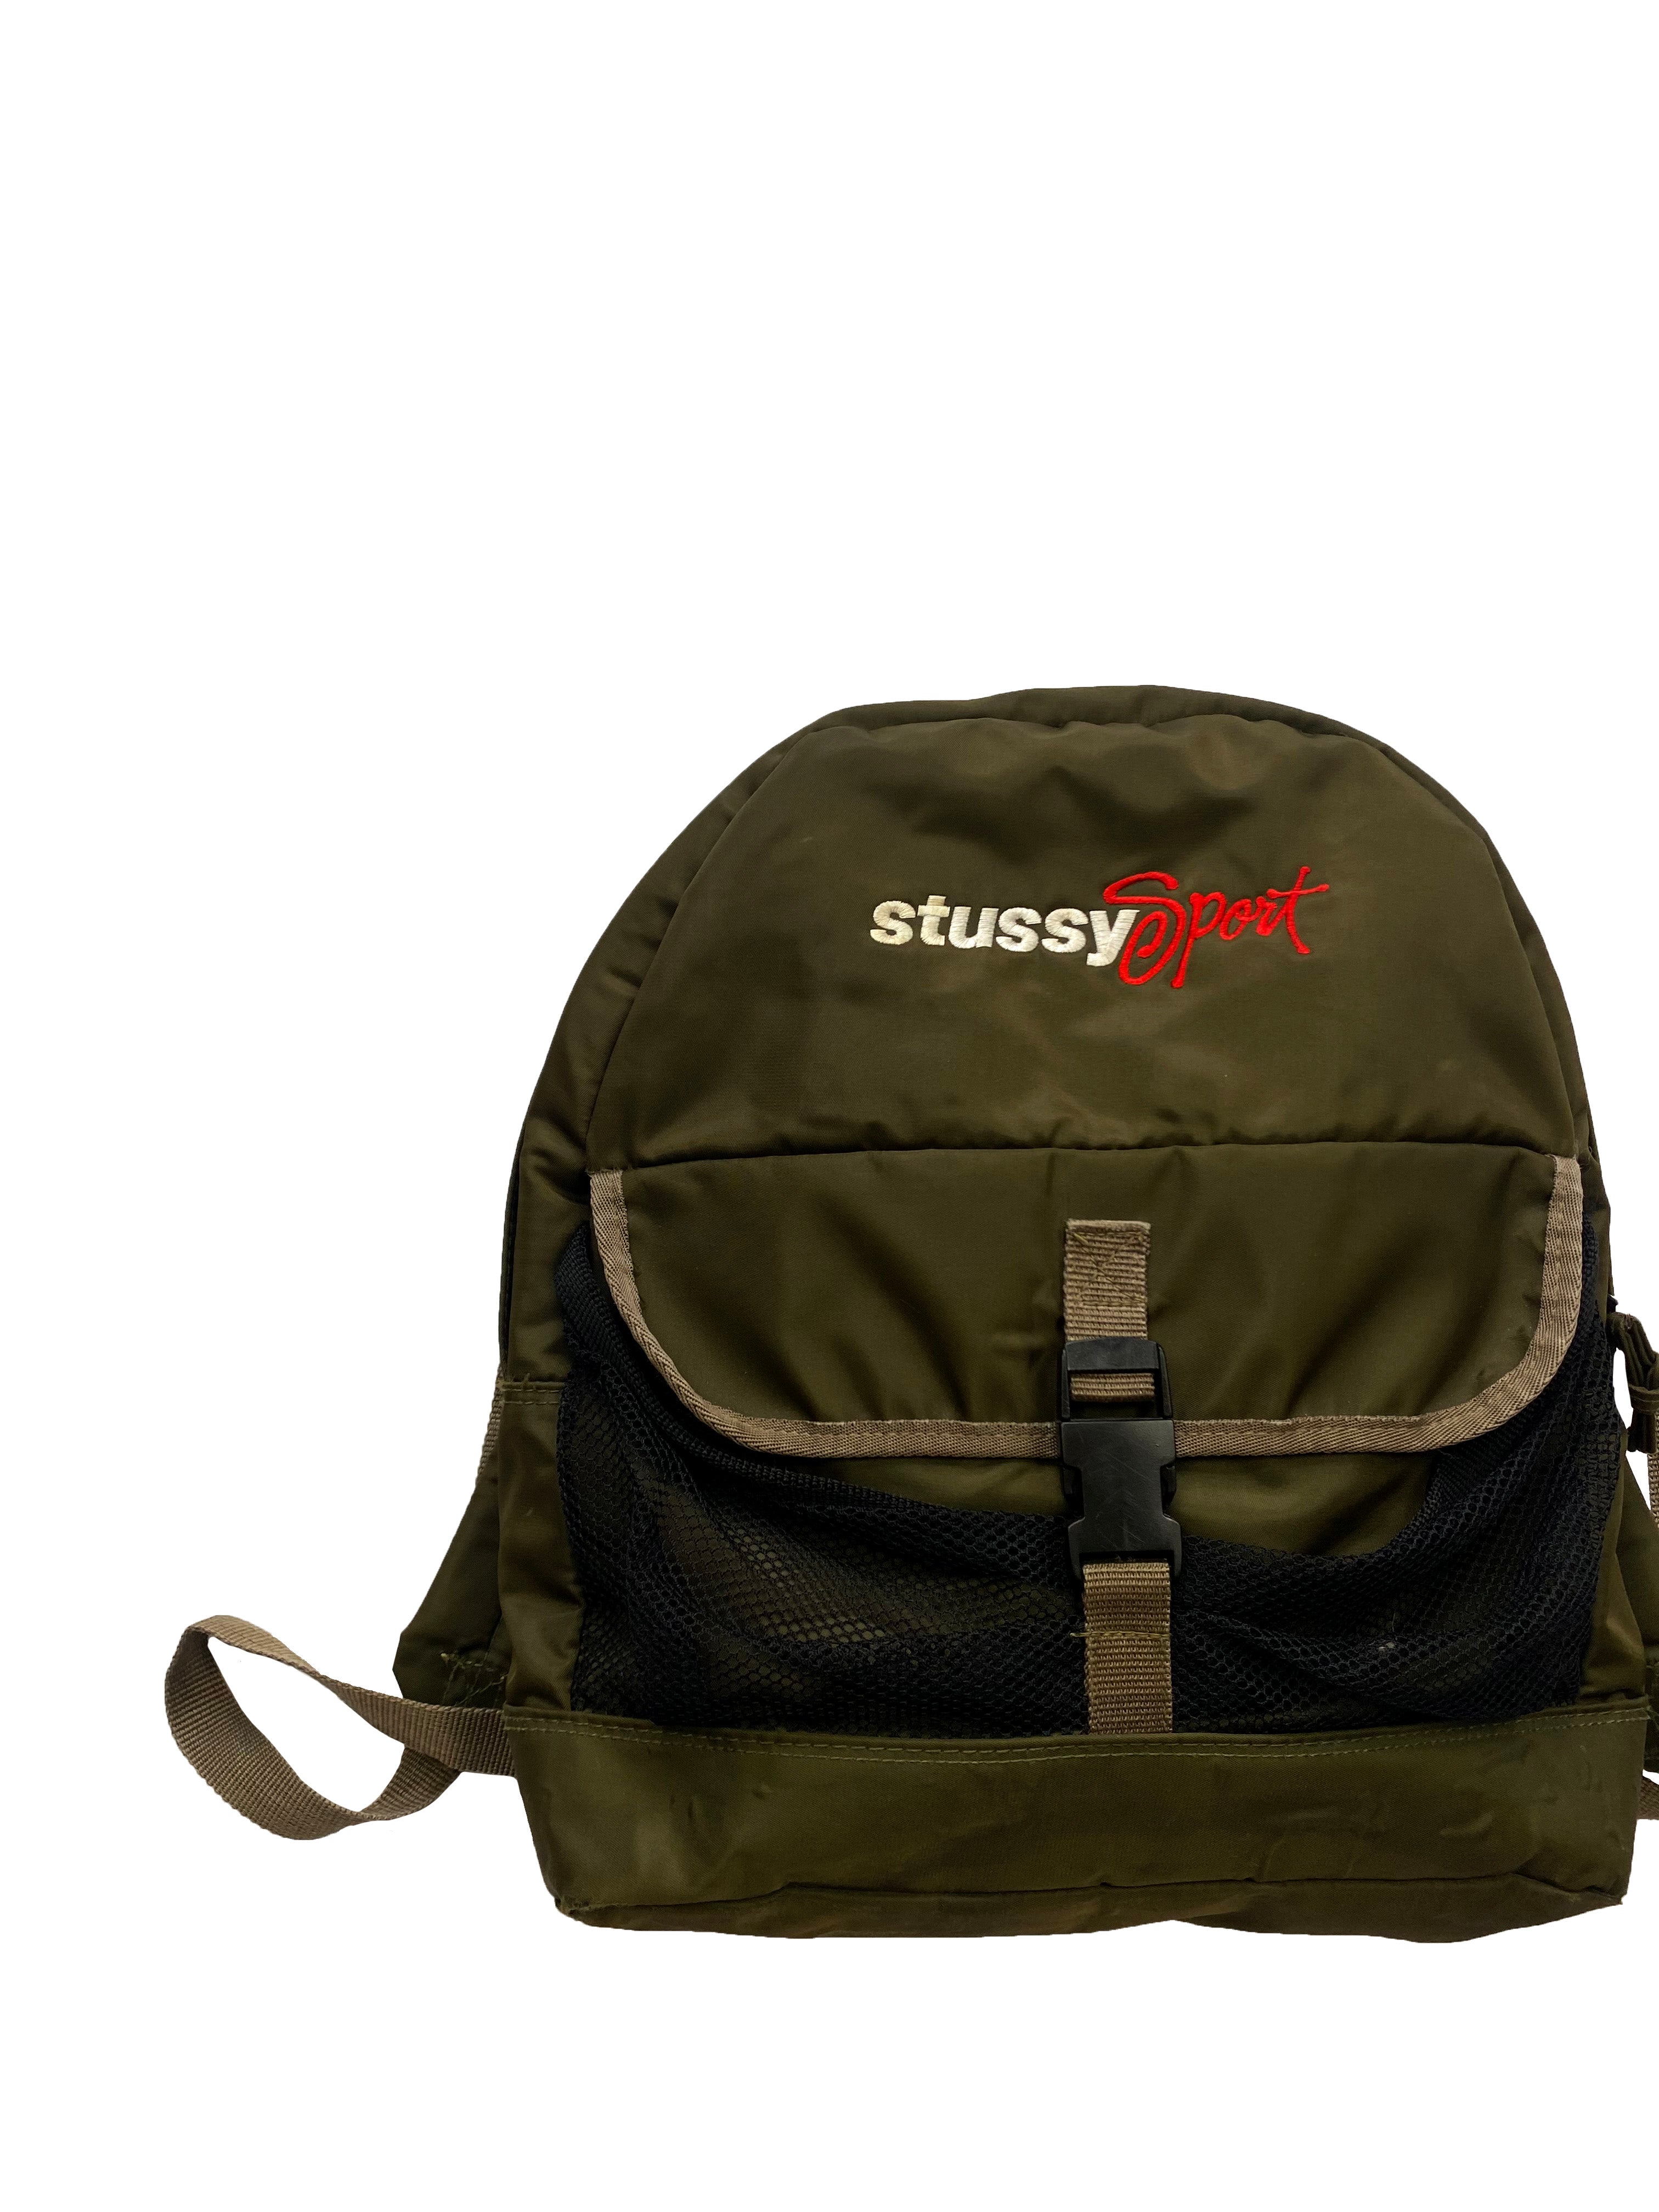 Stussy Sport Khaki Backpack 90s